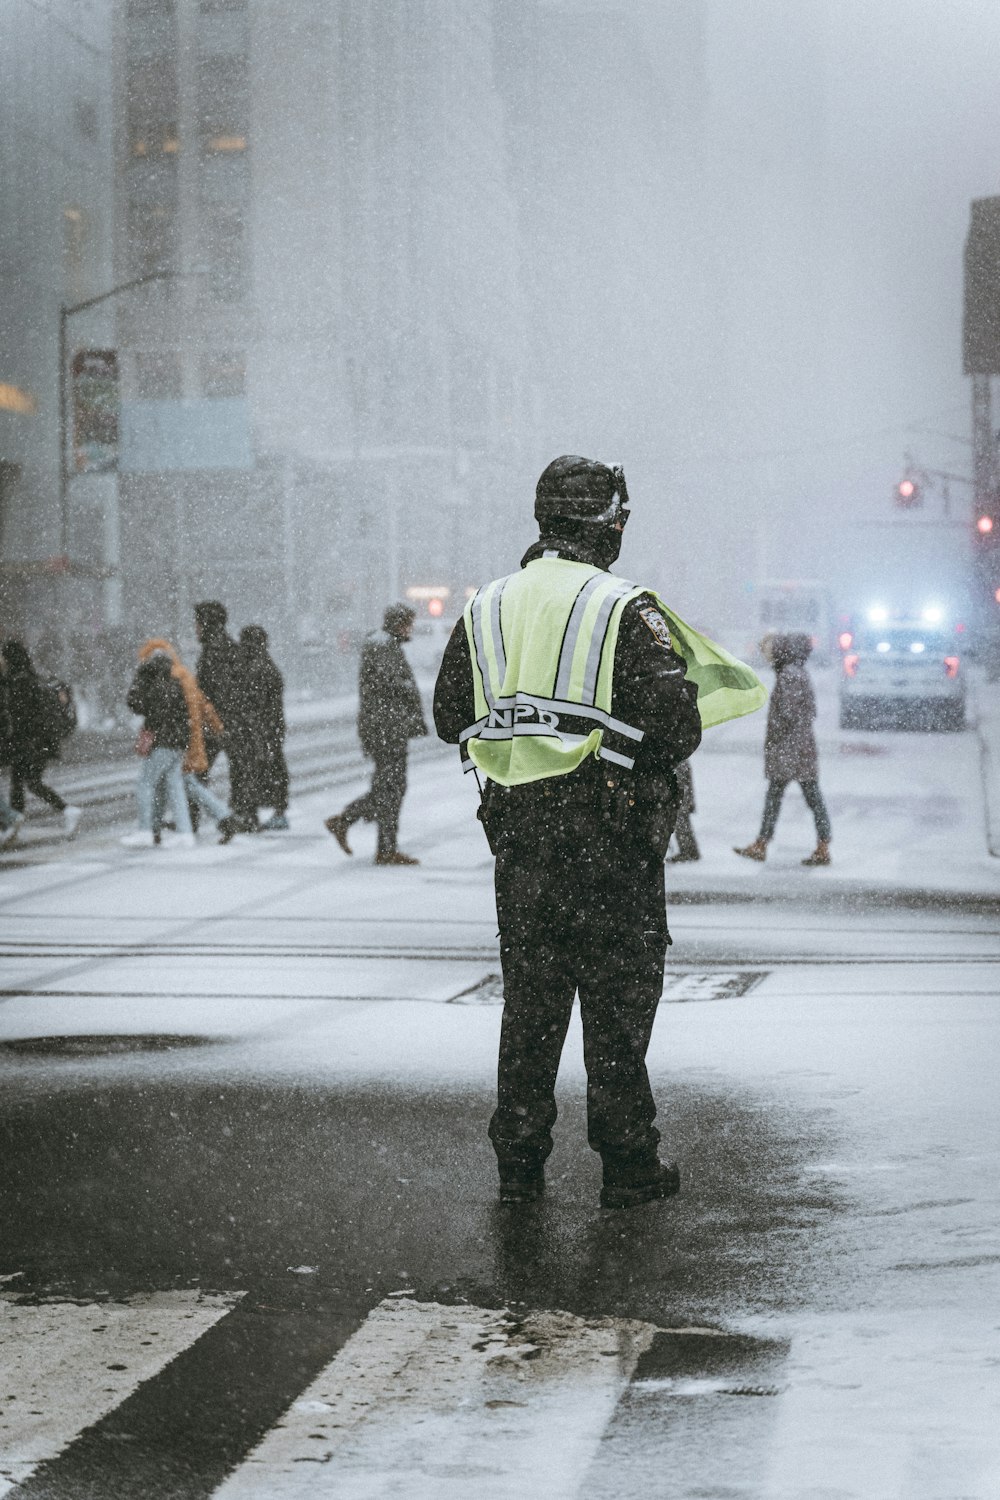 Un oficial de policía parado al costado de una carretera en la nieve